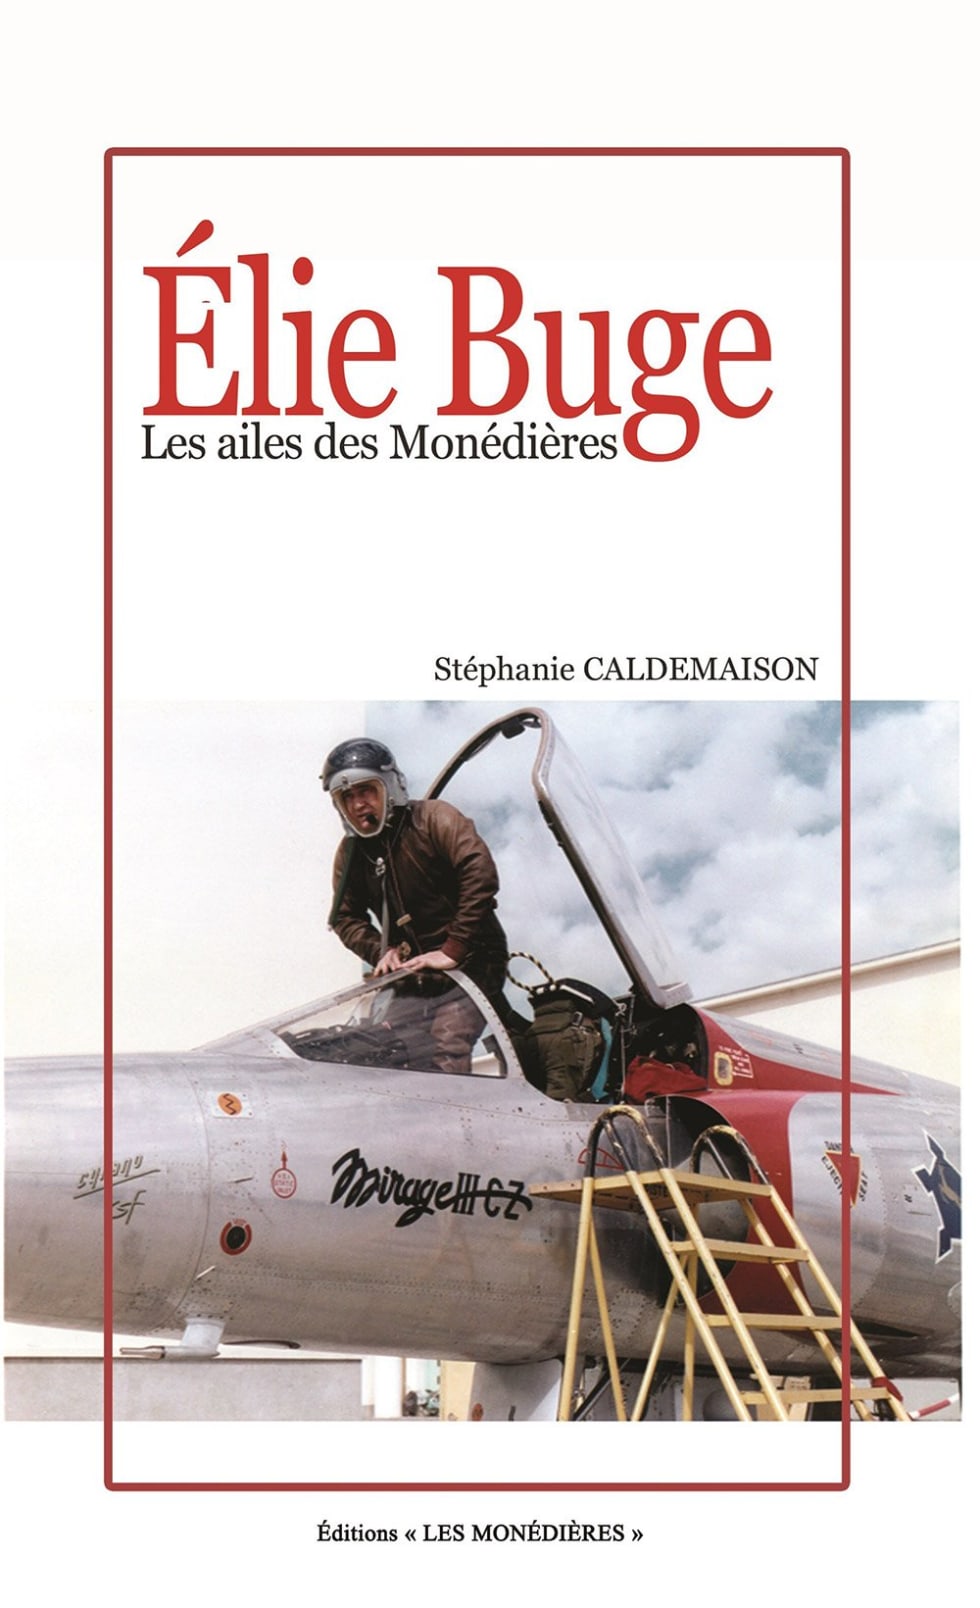 Elie Buge, The Wings of Monédières